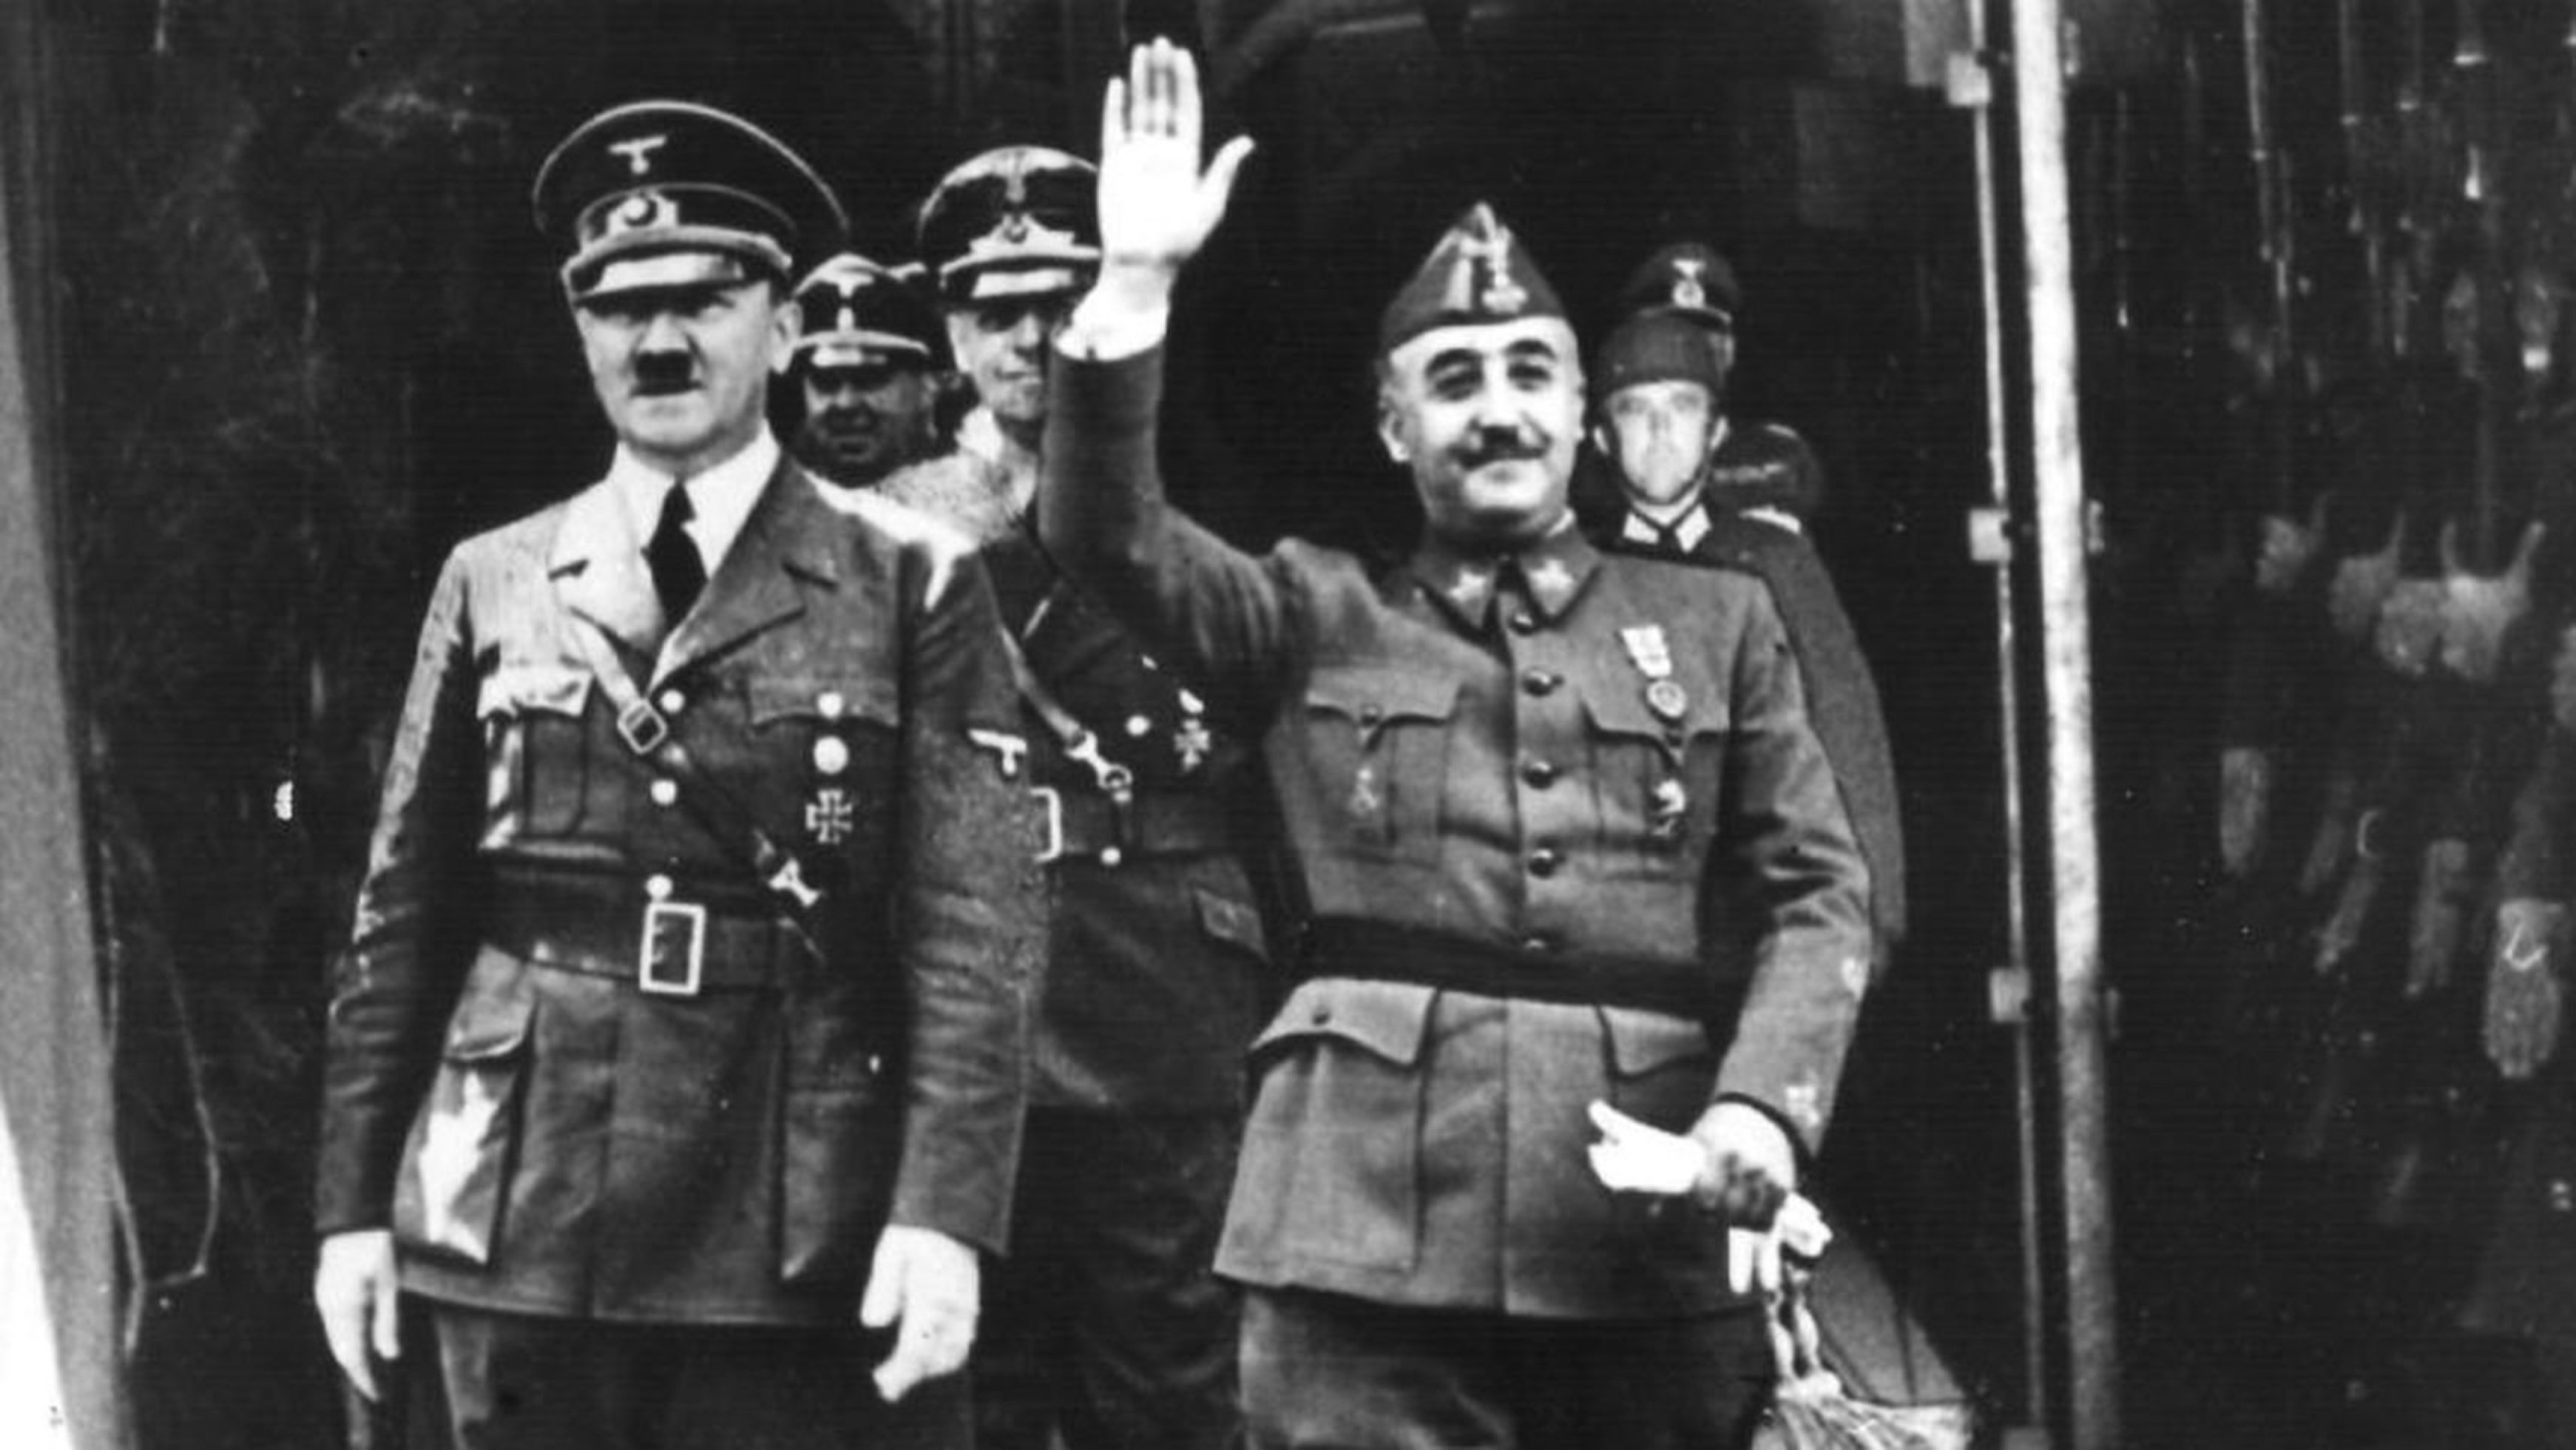 Fúria contra el mitjà que blanqueja el nazisme a la II Guerra Mundial: “Gestas españolas”